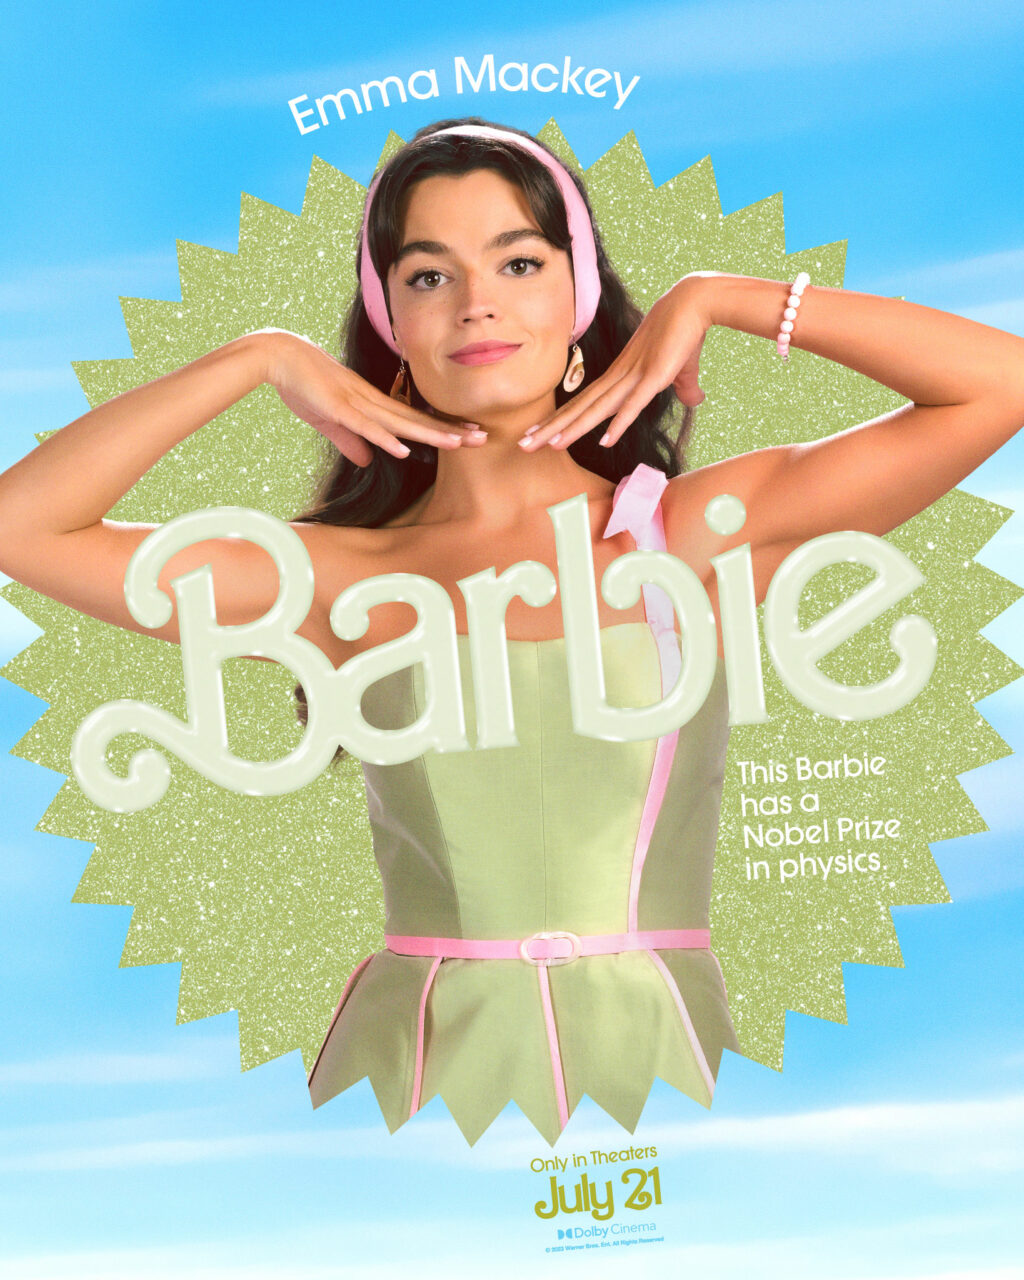 Barbie Selfie Generator: como criar o seu pôster do filme da Barbie